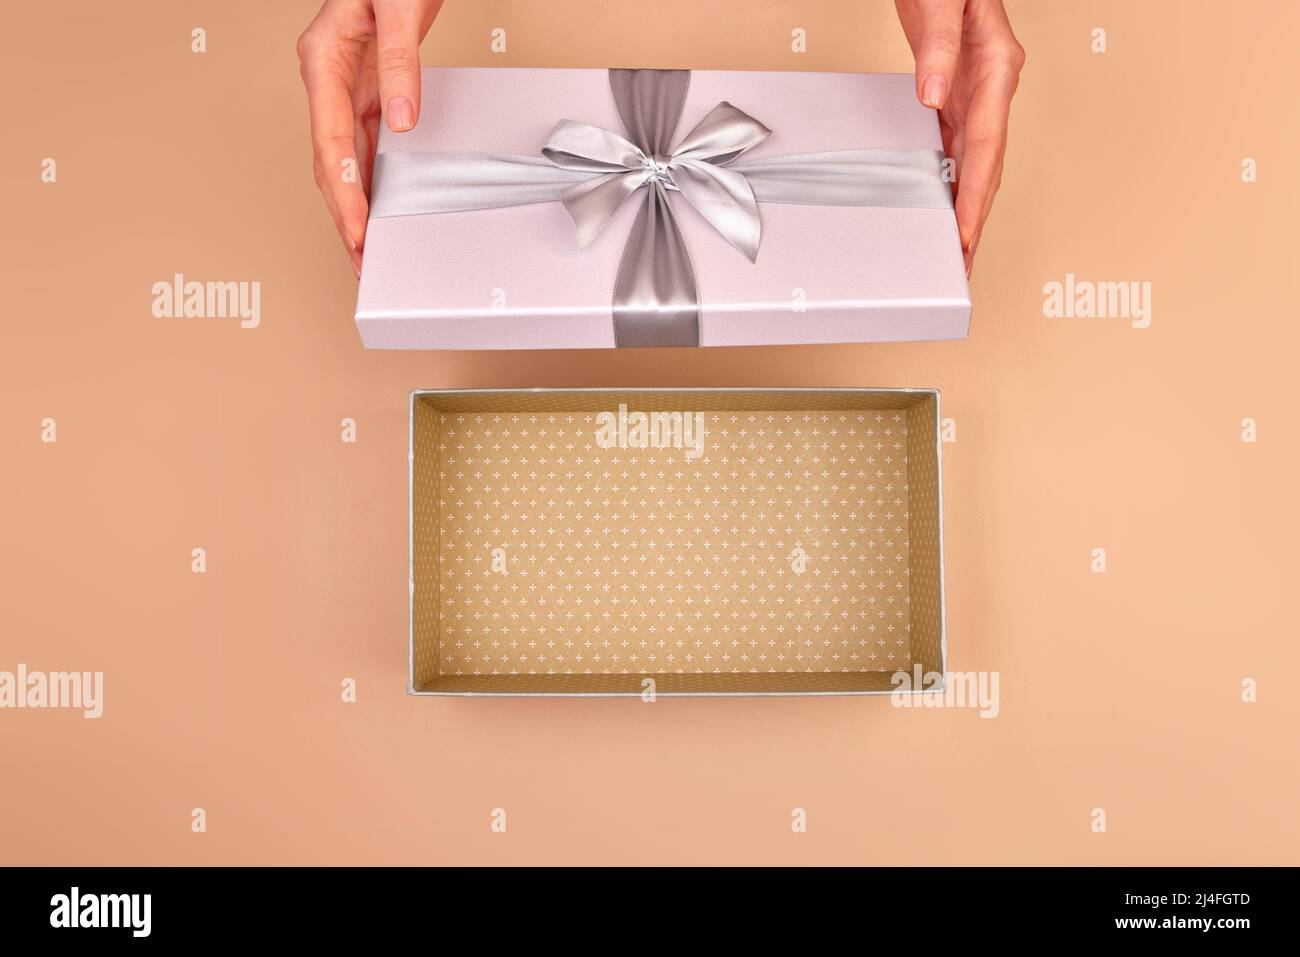 Las manos femeninas abren una caja de luz gris plata con un lazo y puedes ver el paquete vacío beige delicado fondo vista superior Foto de stock